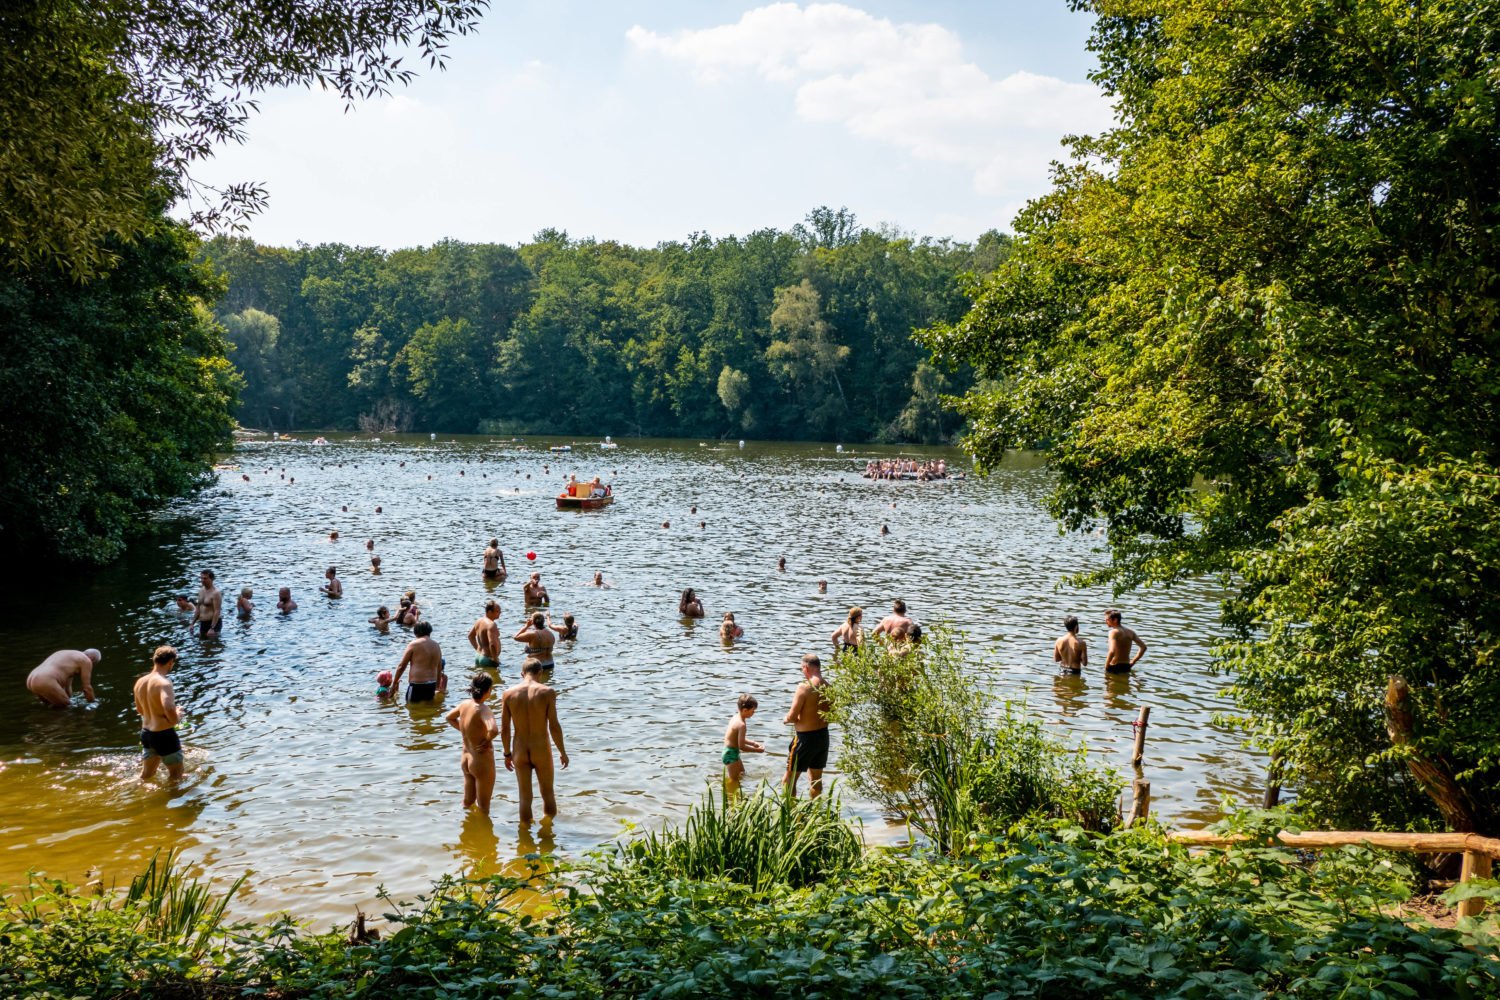 Sommer in Berlin: Am Teufelssee ist Kleidung teils optional. Perfekt für einen FKK-Ausflug. Foto: Imago Images/Zeitz